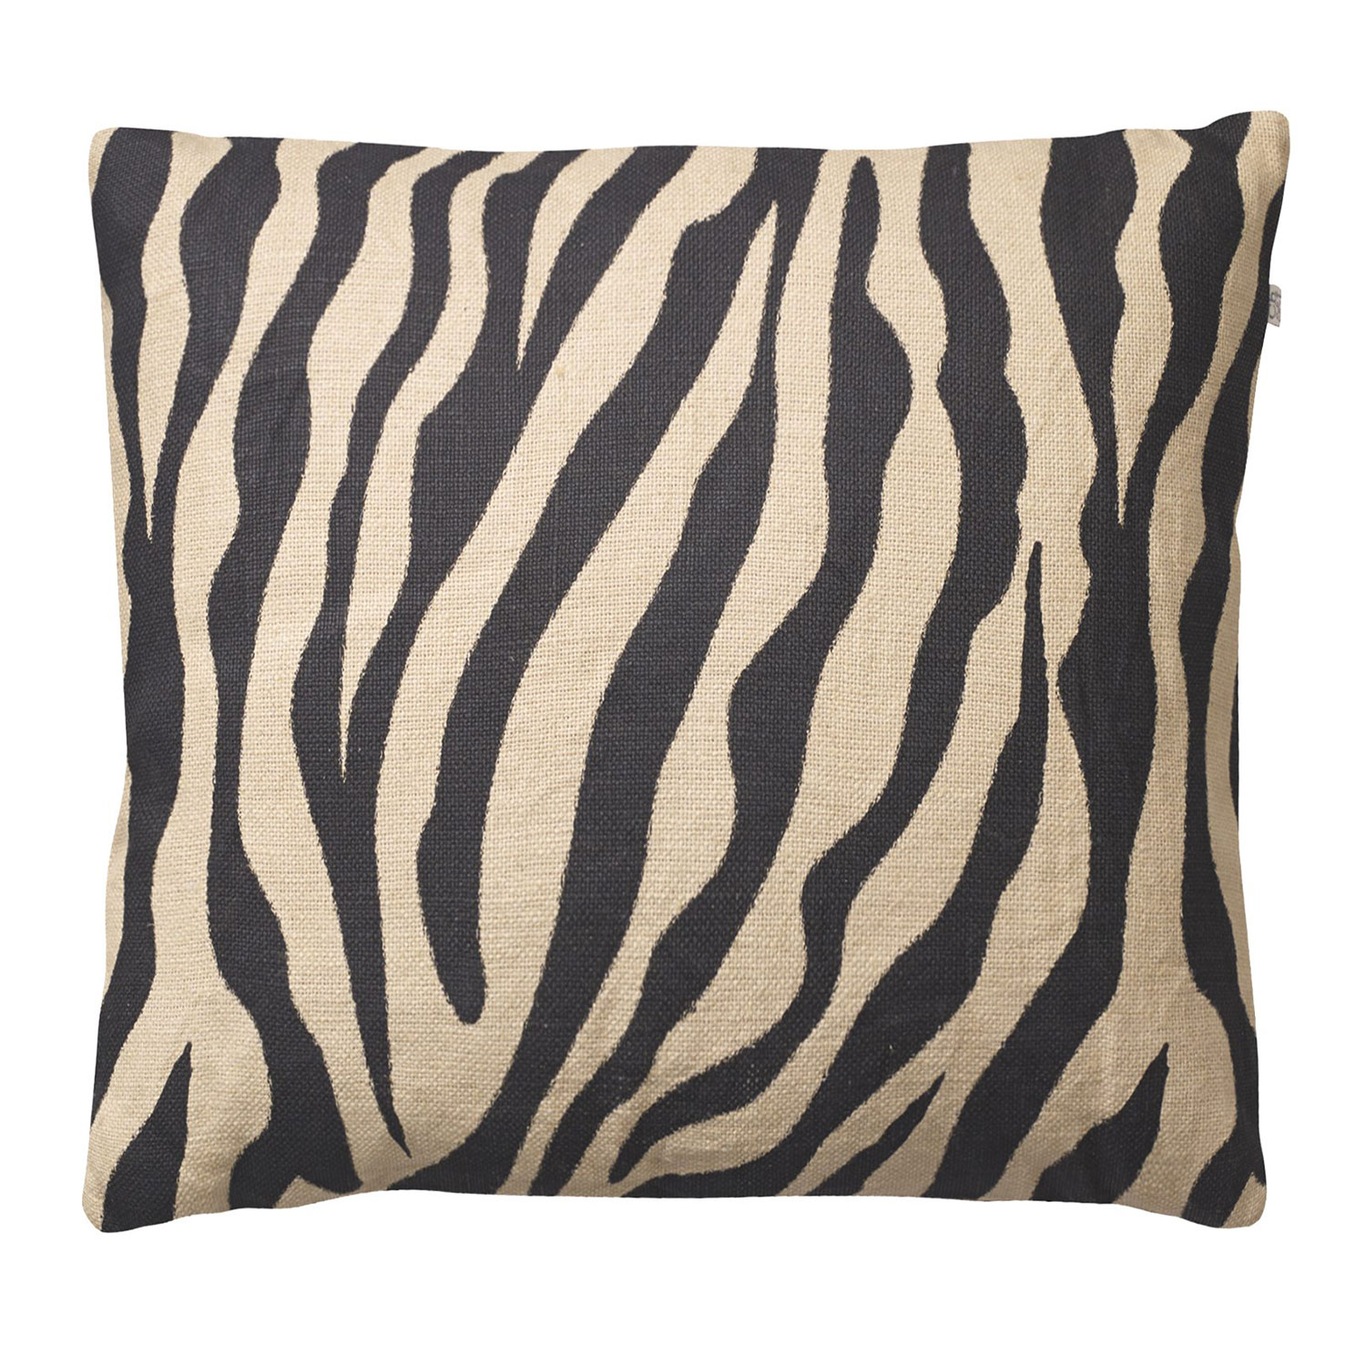 Zebra Cushion Cover 50x50 cm, Beige/Black